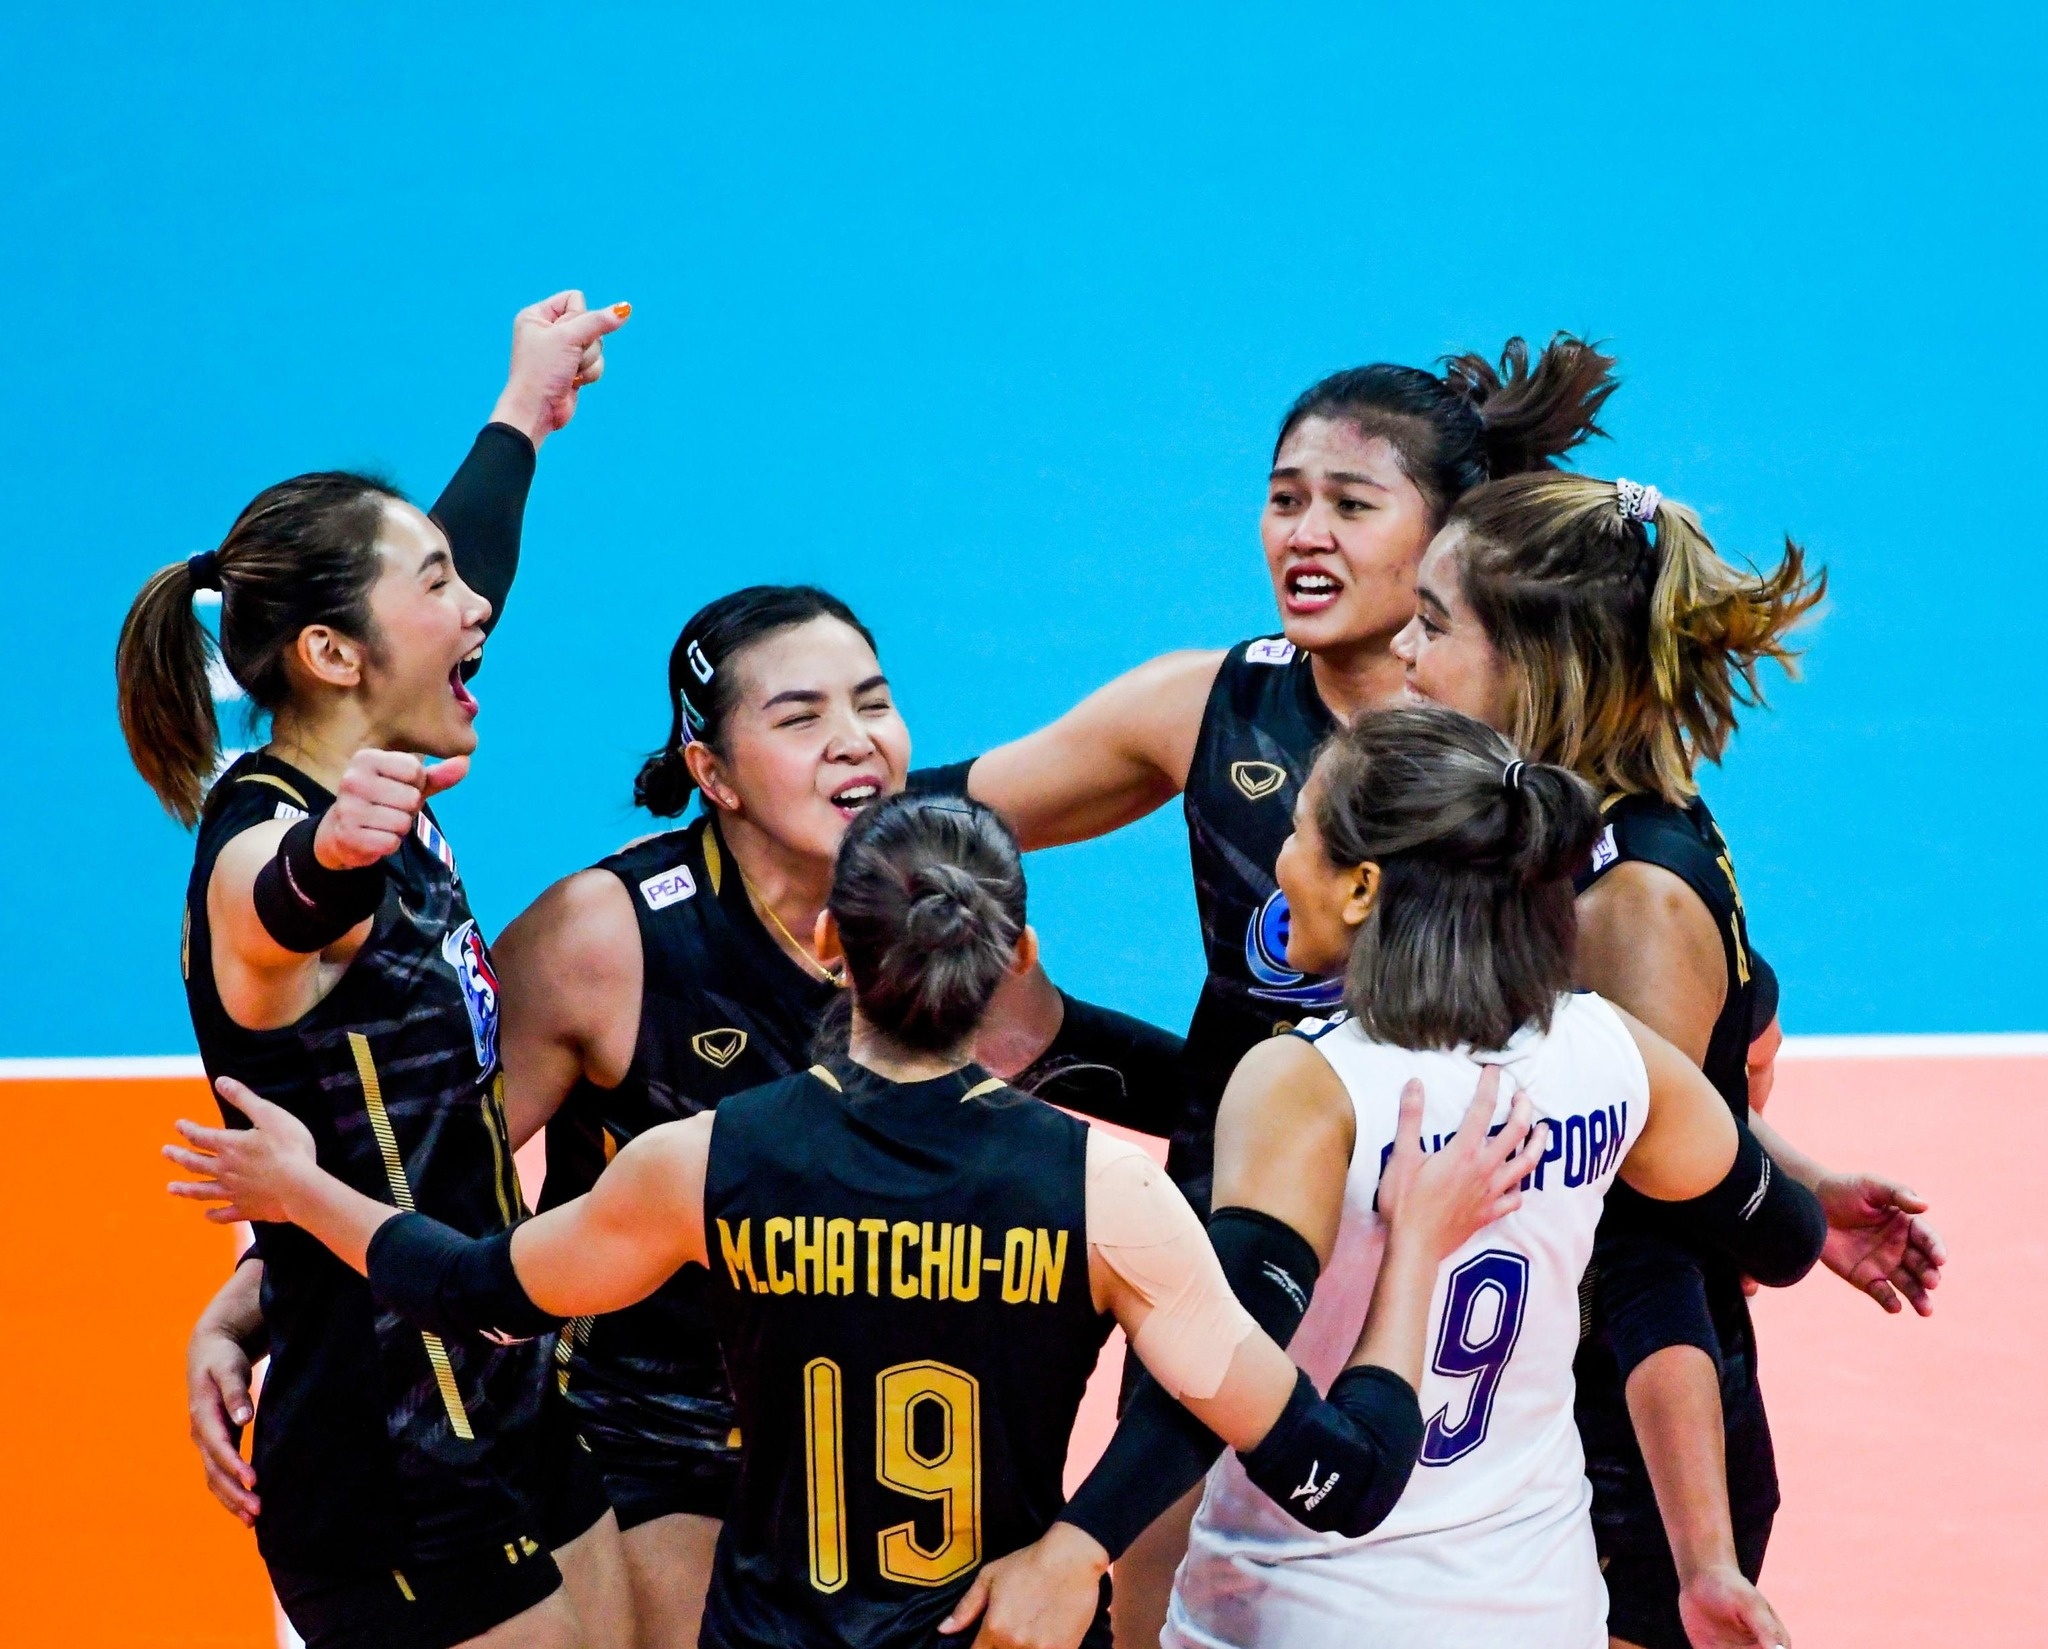 Tuyển nữ bóng chuyền Thái Lan thua liền 2 trận quan trọng ở giải thế giới-2